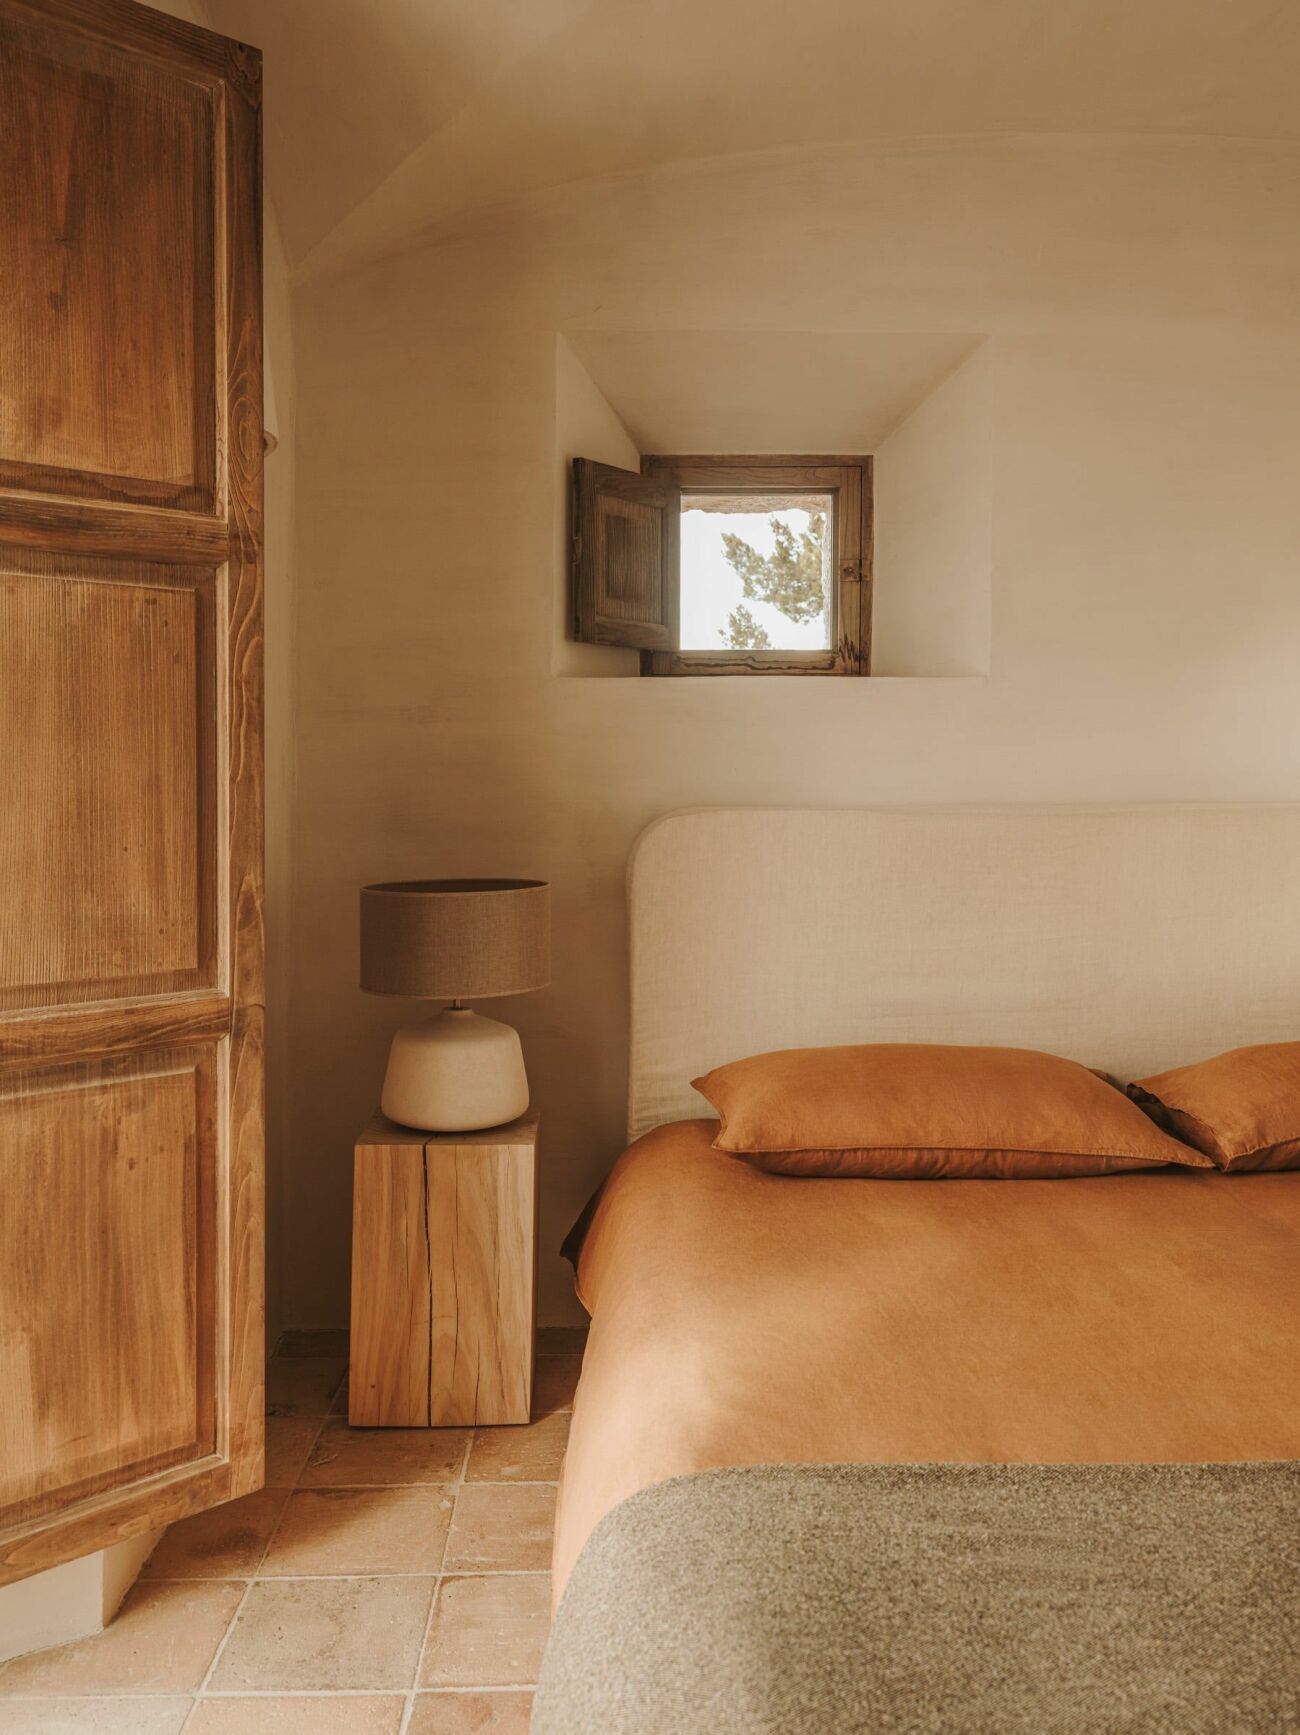 sovrum med terrakotta och naturnära färger som beige och brunt hos Zara Home våren 2021